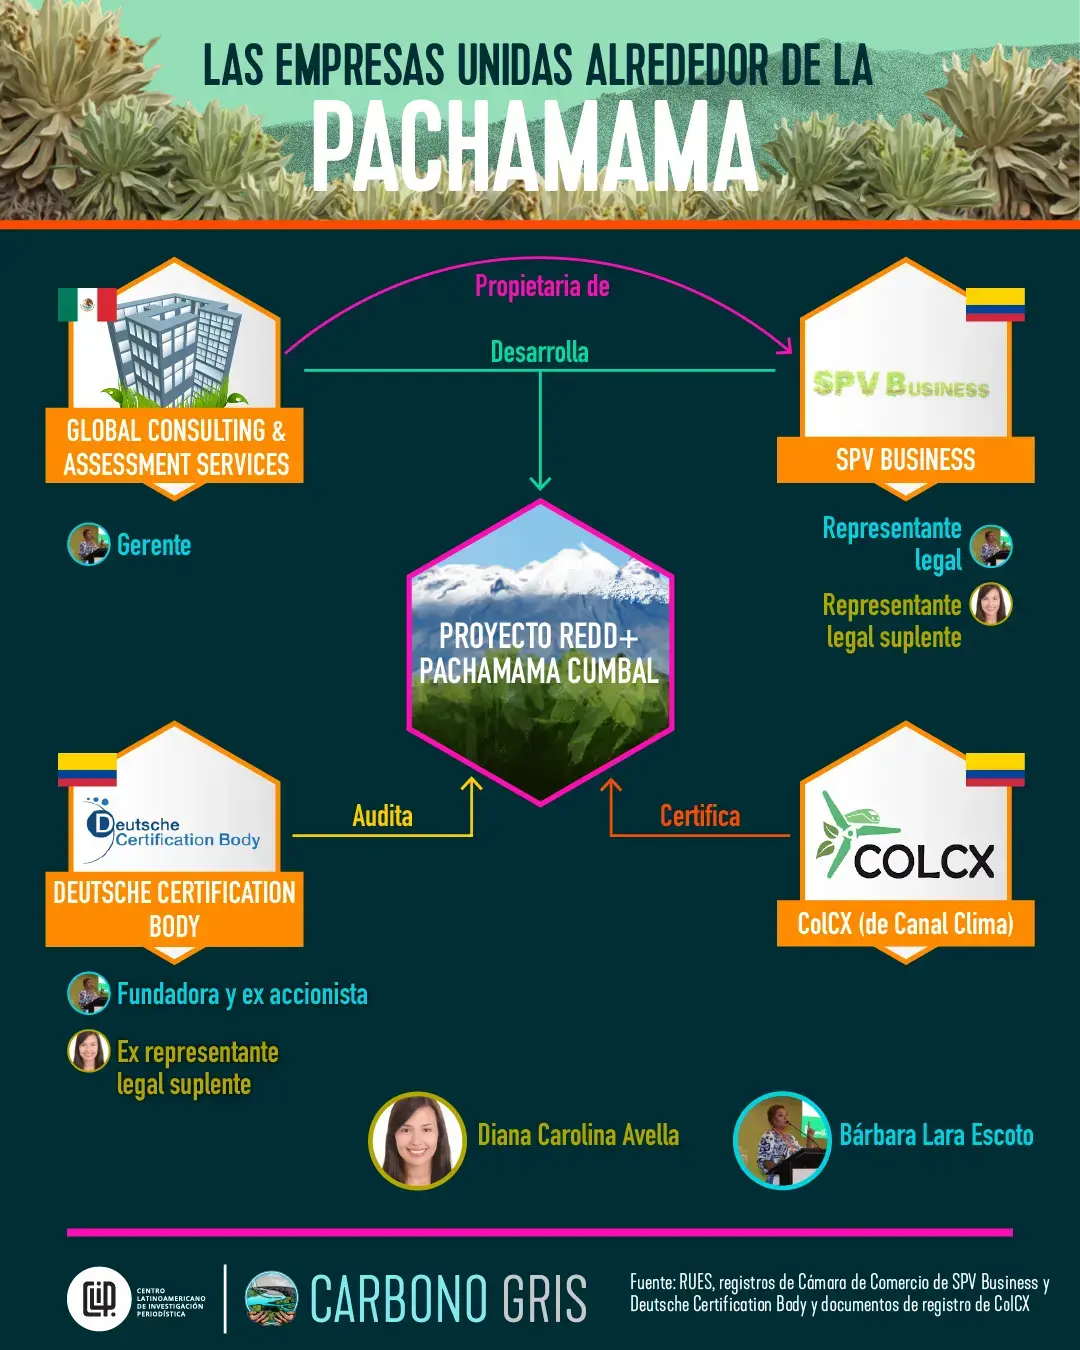 Infografía que muestra la red de empresas alrededor del proyecto Pachamama Central, en el resguardo de Cumbal. La representante legal de una de ellas y gerente de otra, fue fundadora de la empresa que auditó el proyecto.